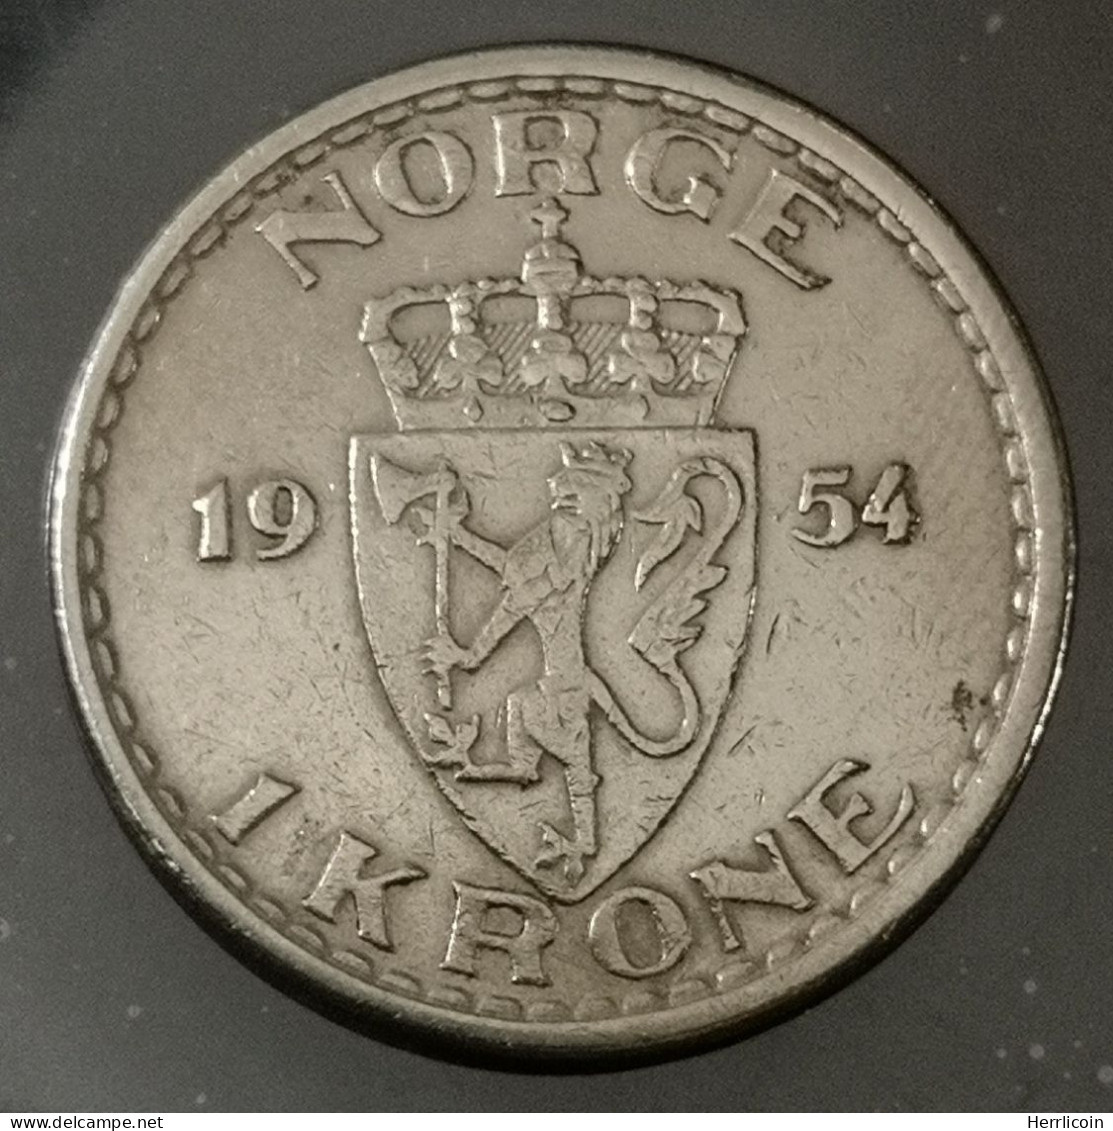 Monnaie Norvège - 1954 - 1 Krone - Haakon VII - Noorwegen